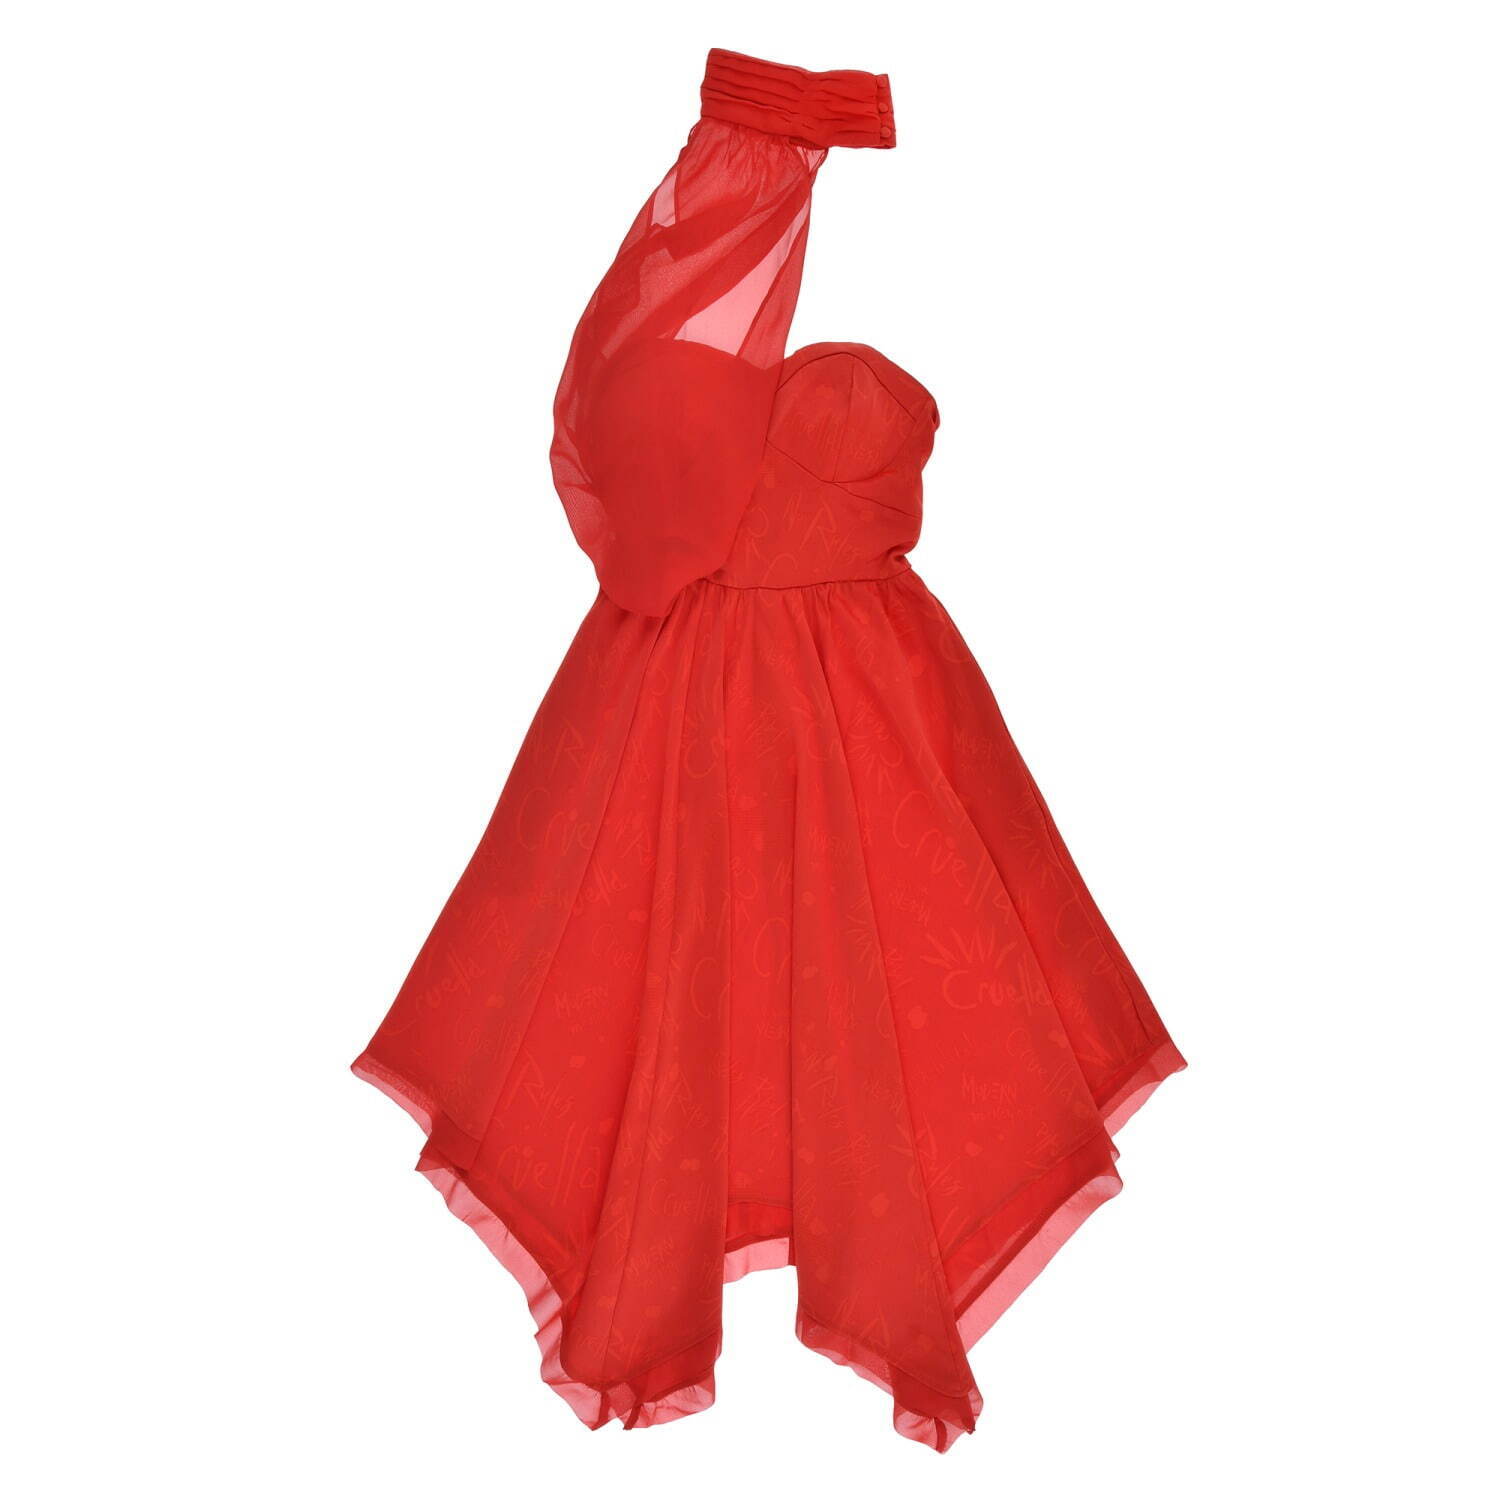 ディズニーストア クルエラ 着想のパンキッシュなtシャツ 真っ赤なドレス コスチュームセットも ファッションプレス